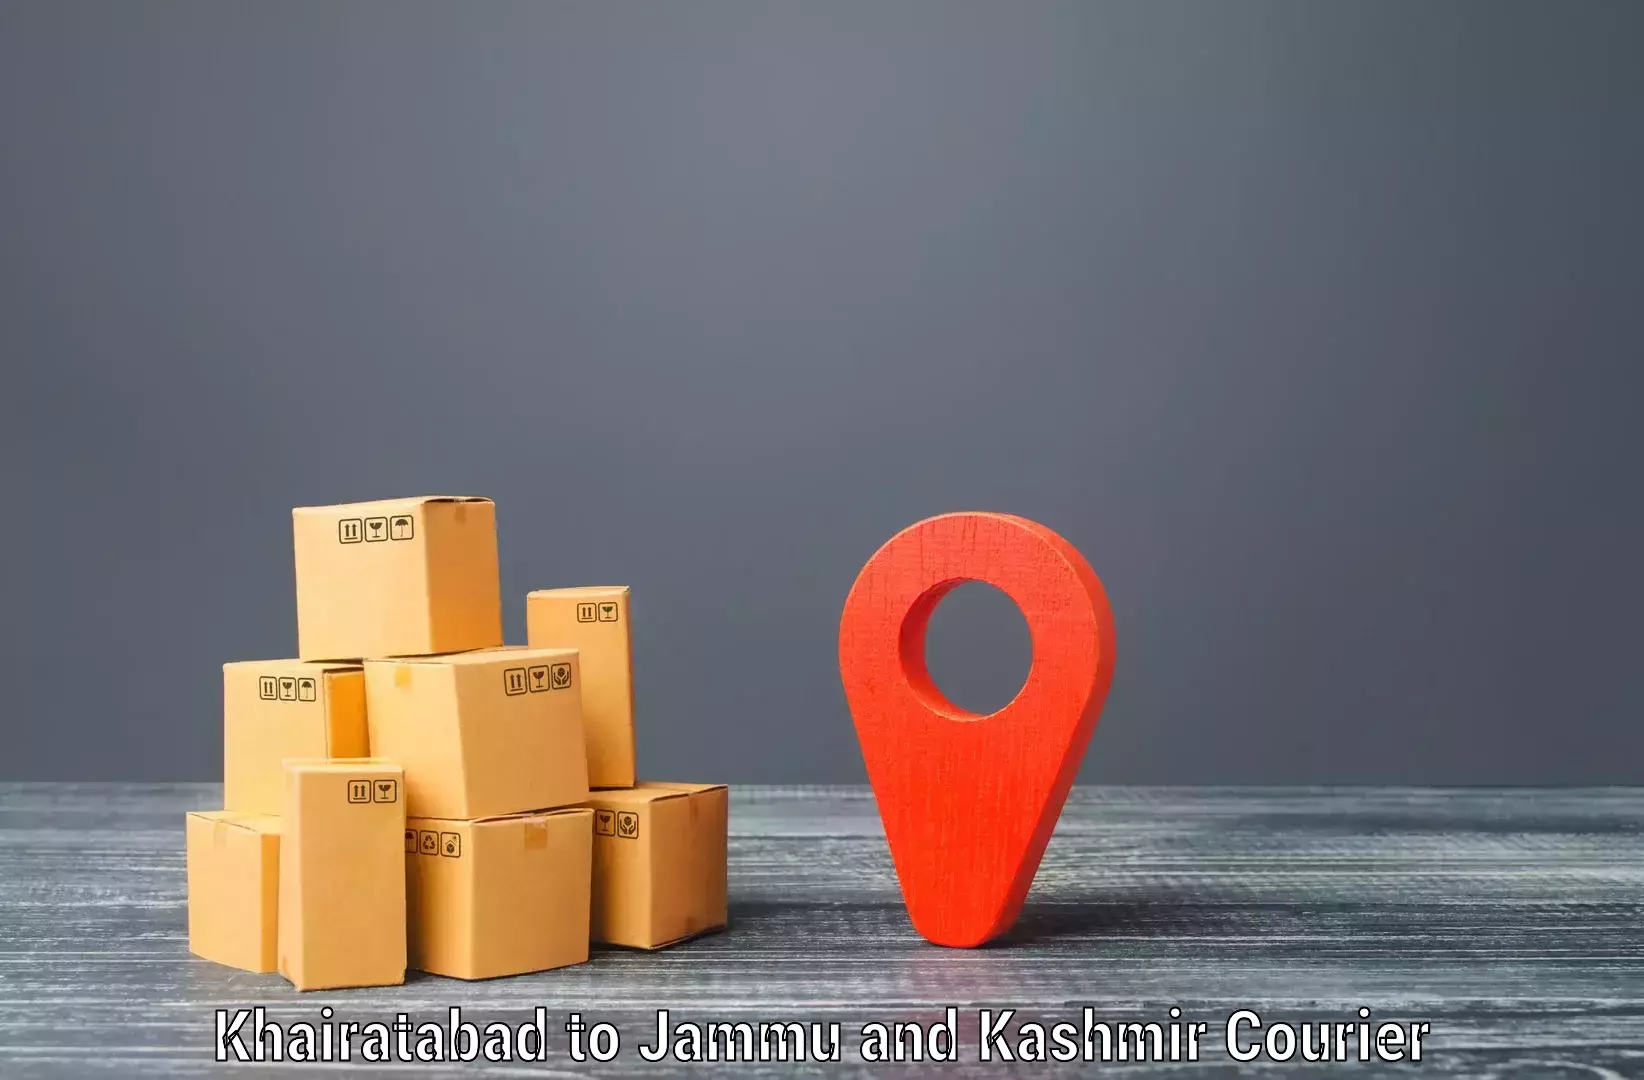 Nationwide shipping coverage Khairatabad to Kulgam